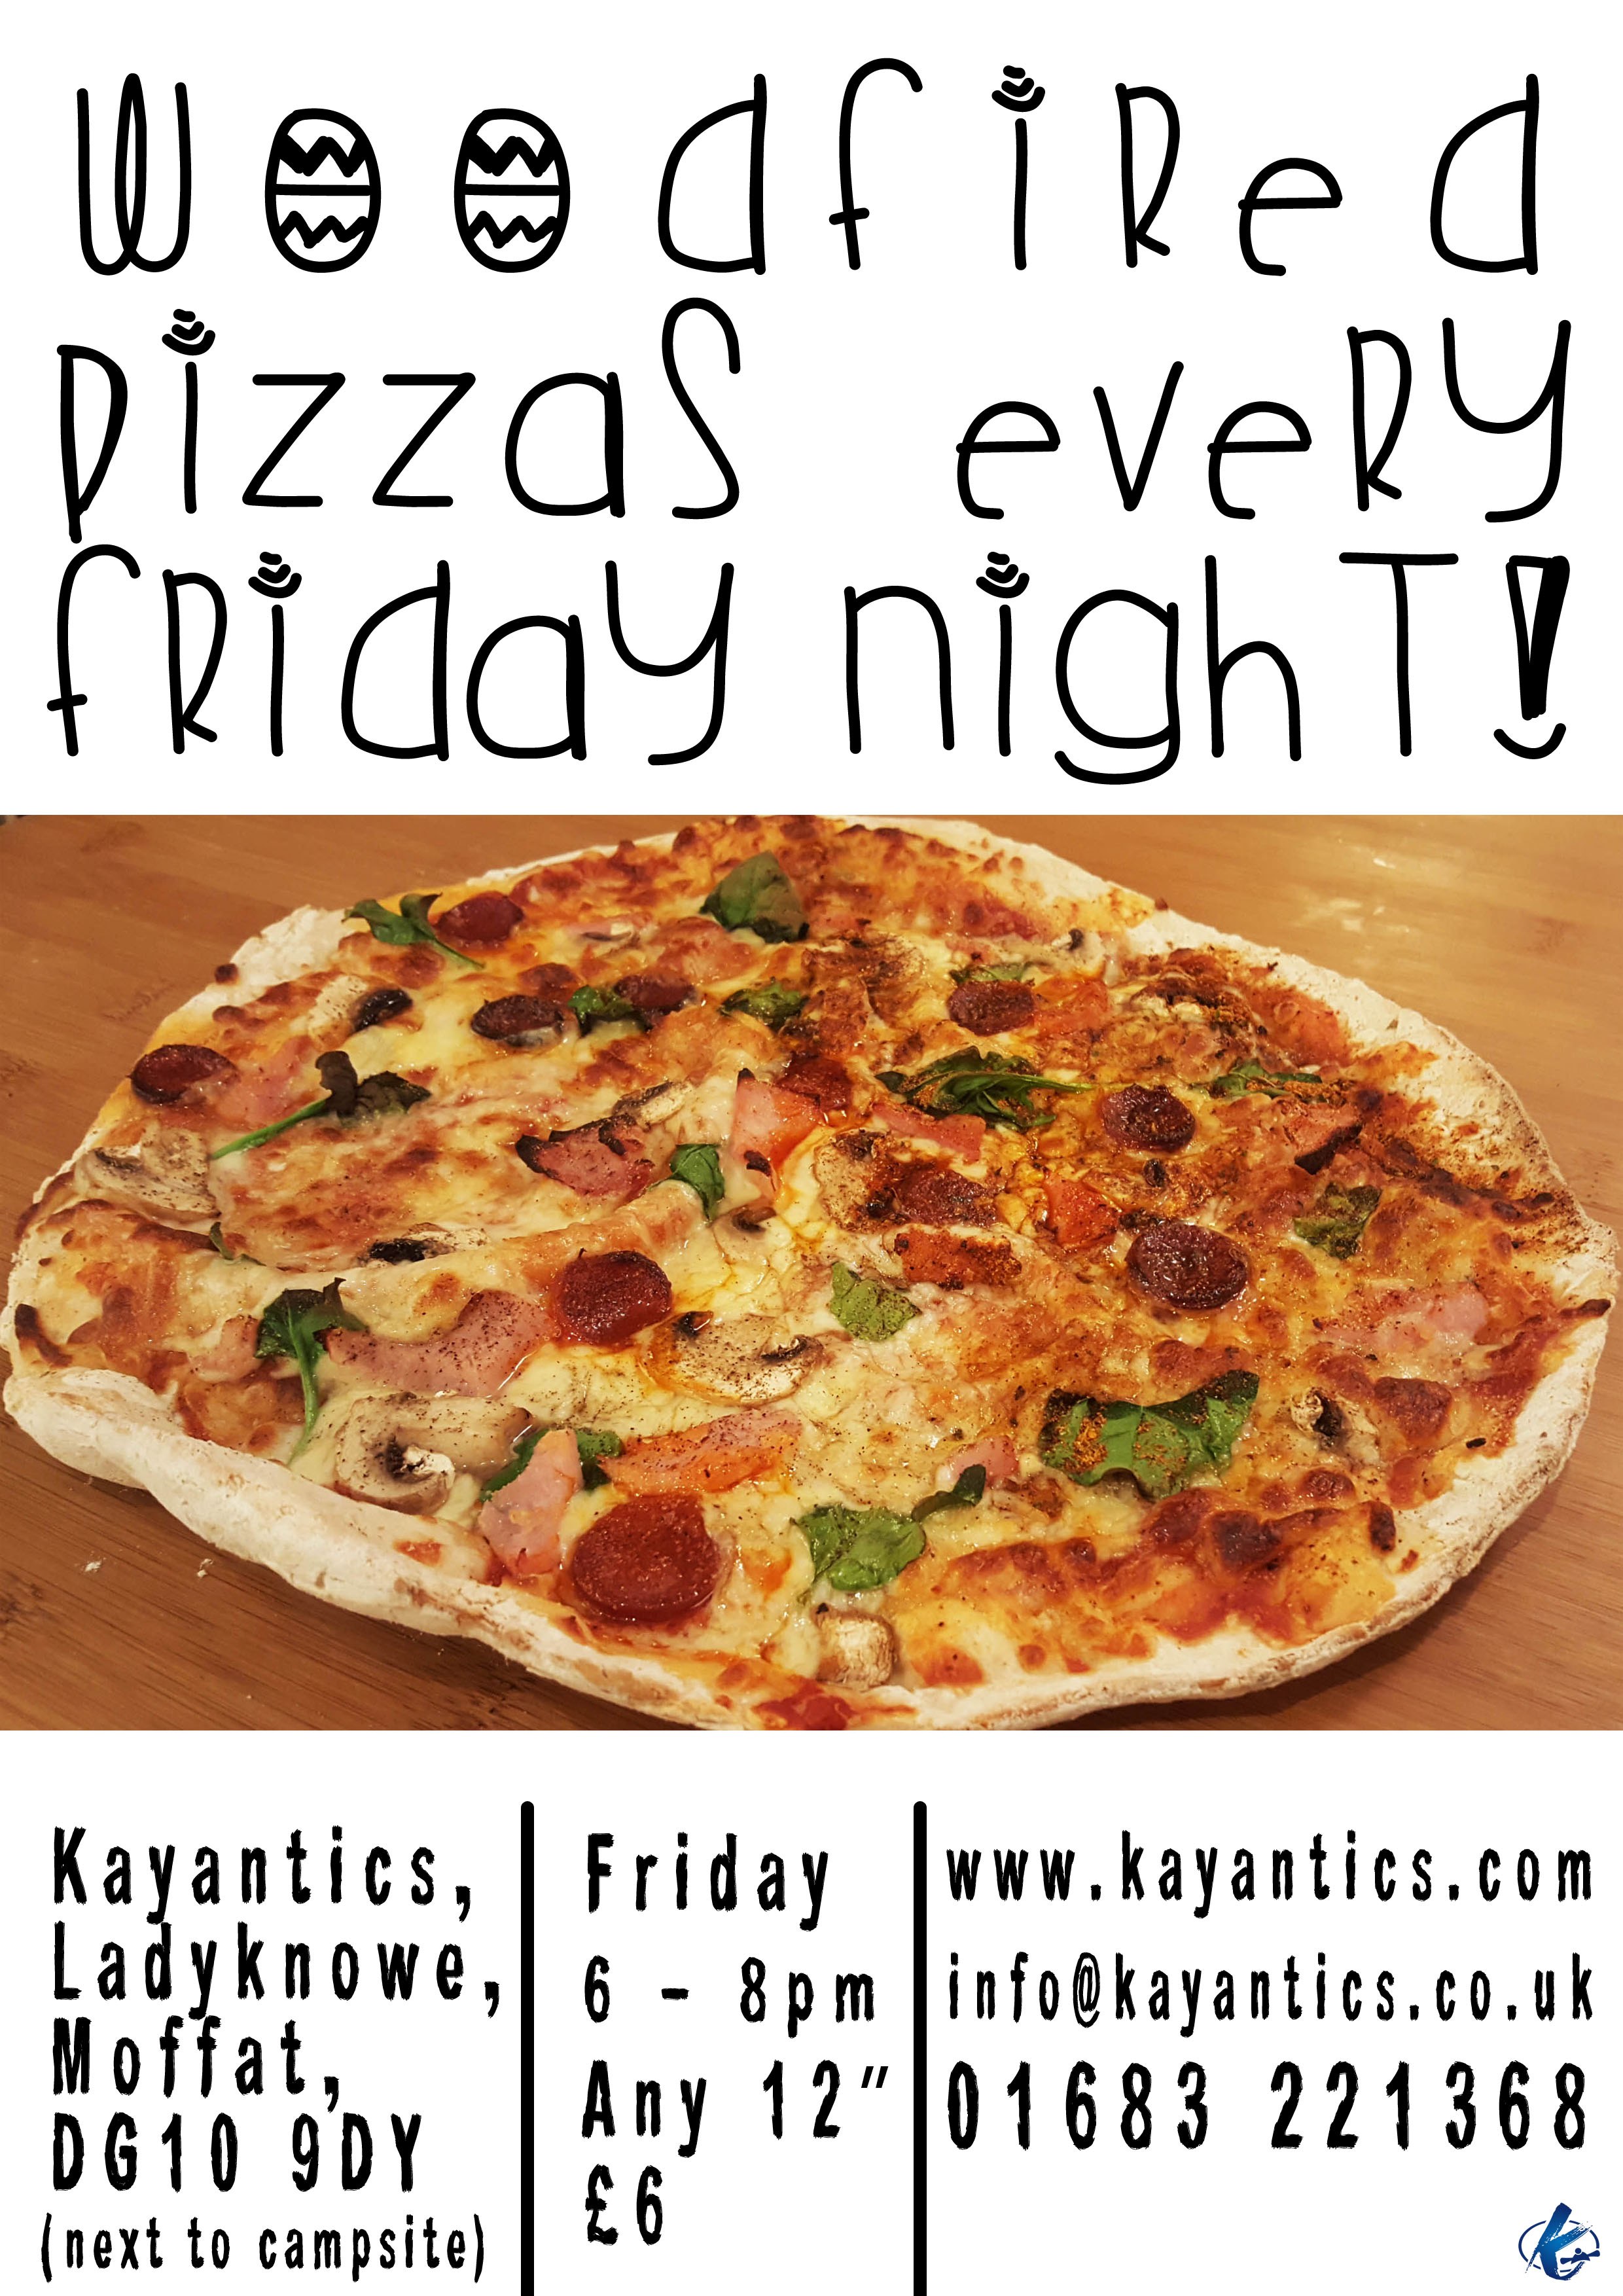 Friday Night Pizza night